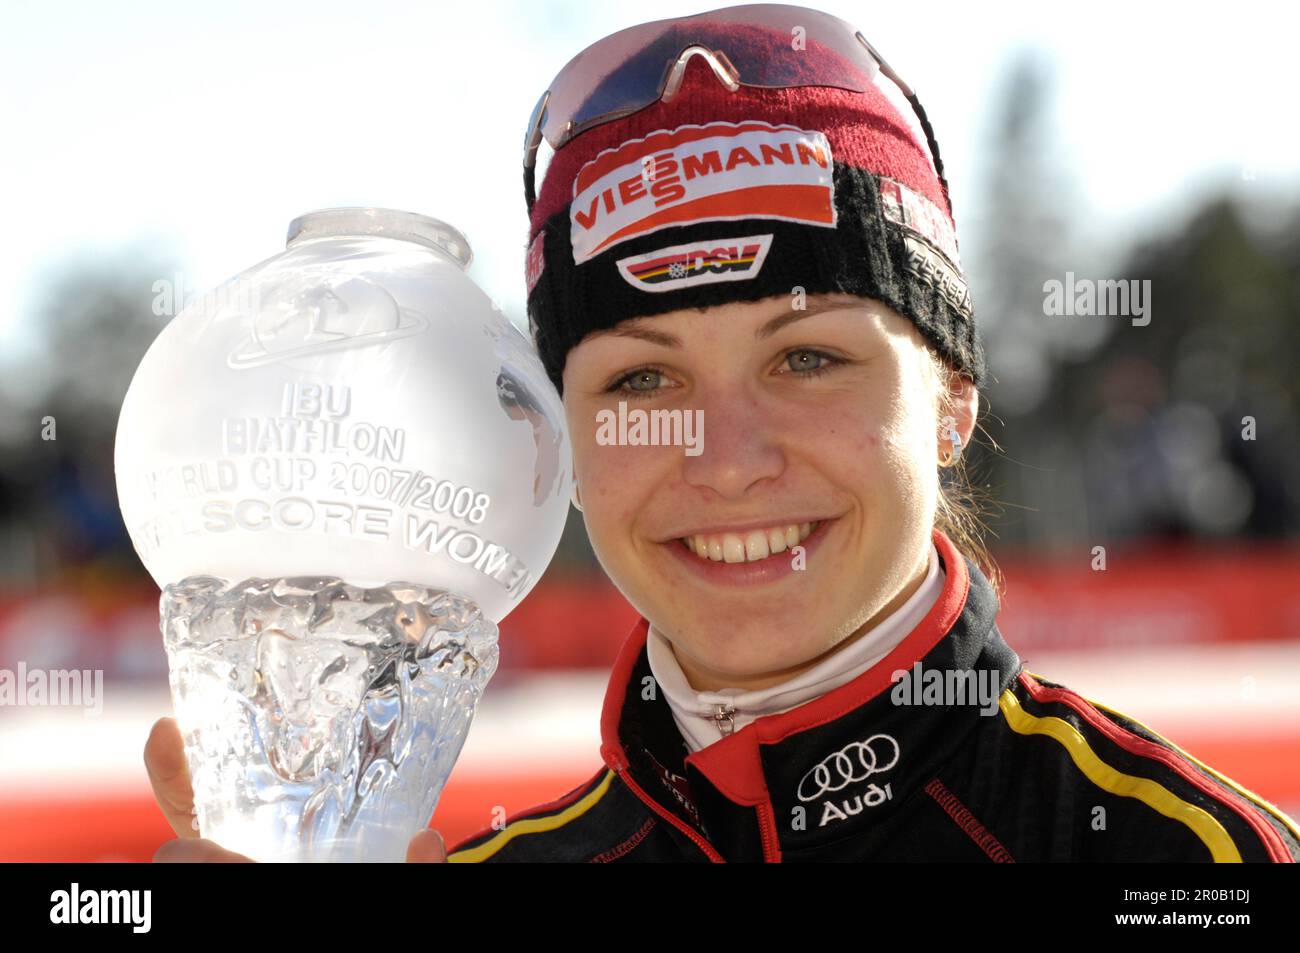 Magdalena Neuner, die Gesamt Welt Cup Siegerin mit dem Pokal für den Gesamtweltcup. Biathlon 10km Massenstart der Frauen 16.3.2008 Stock Photo